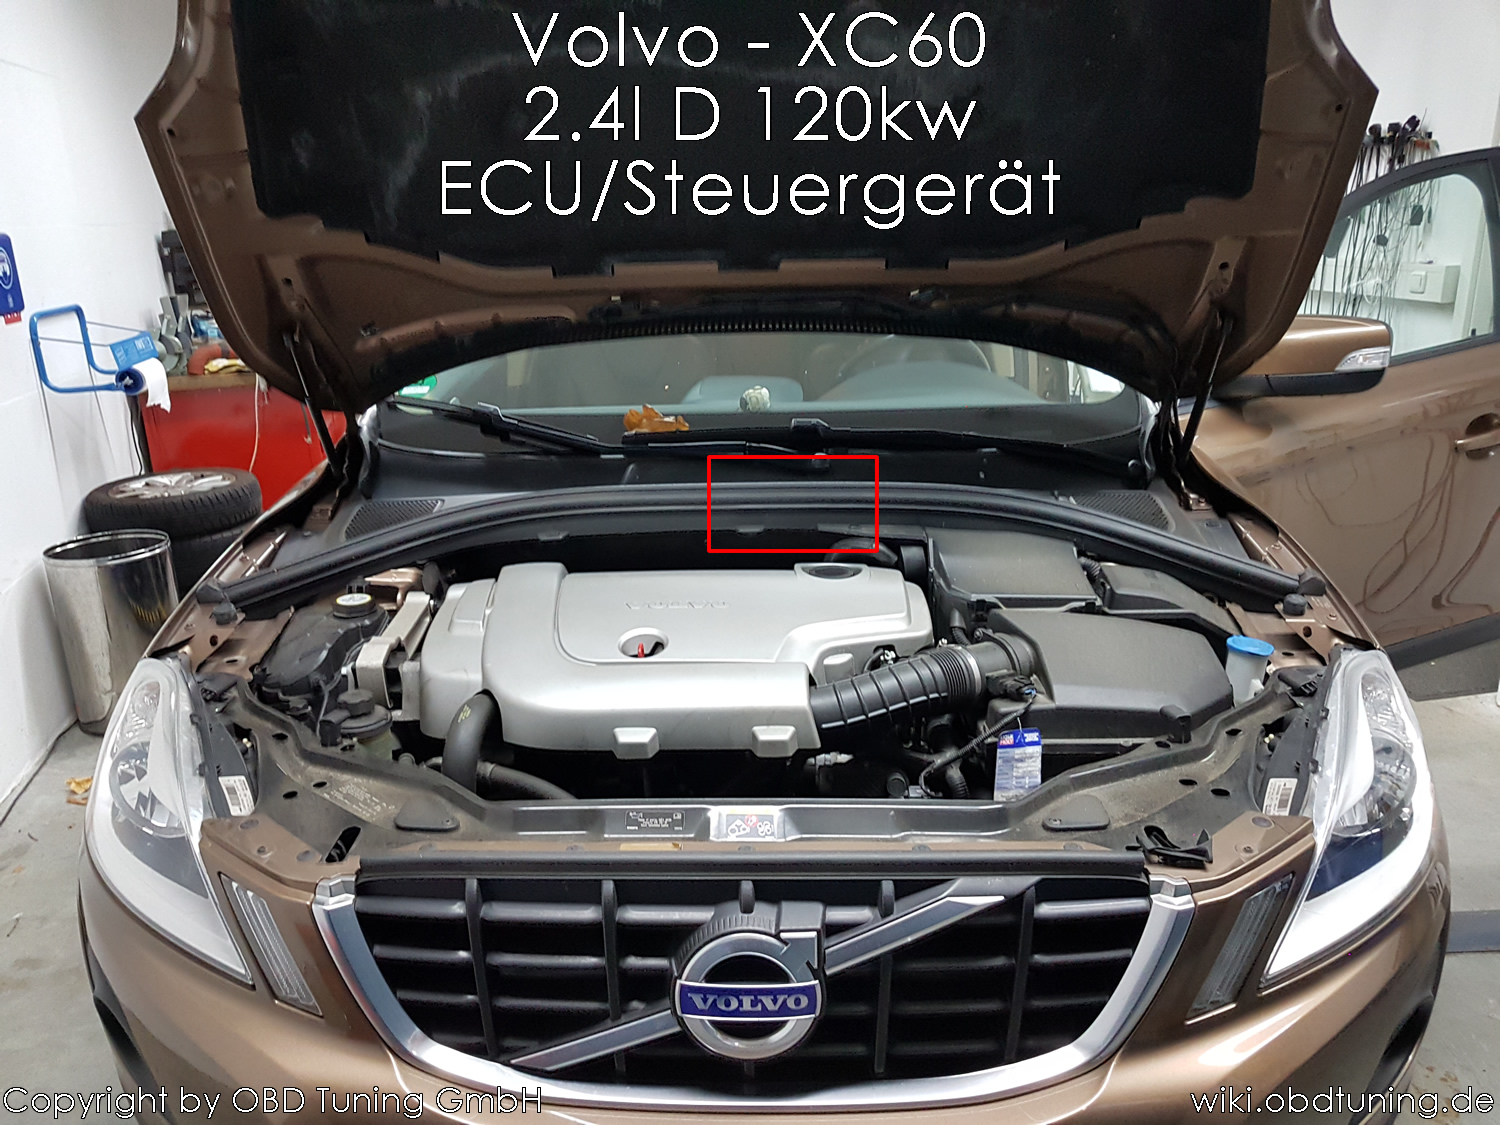 Volvo XC60 ECU 01.jpg